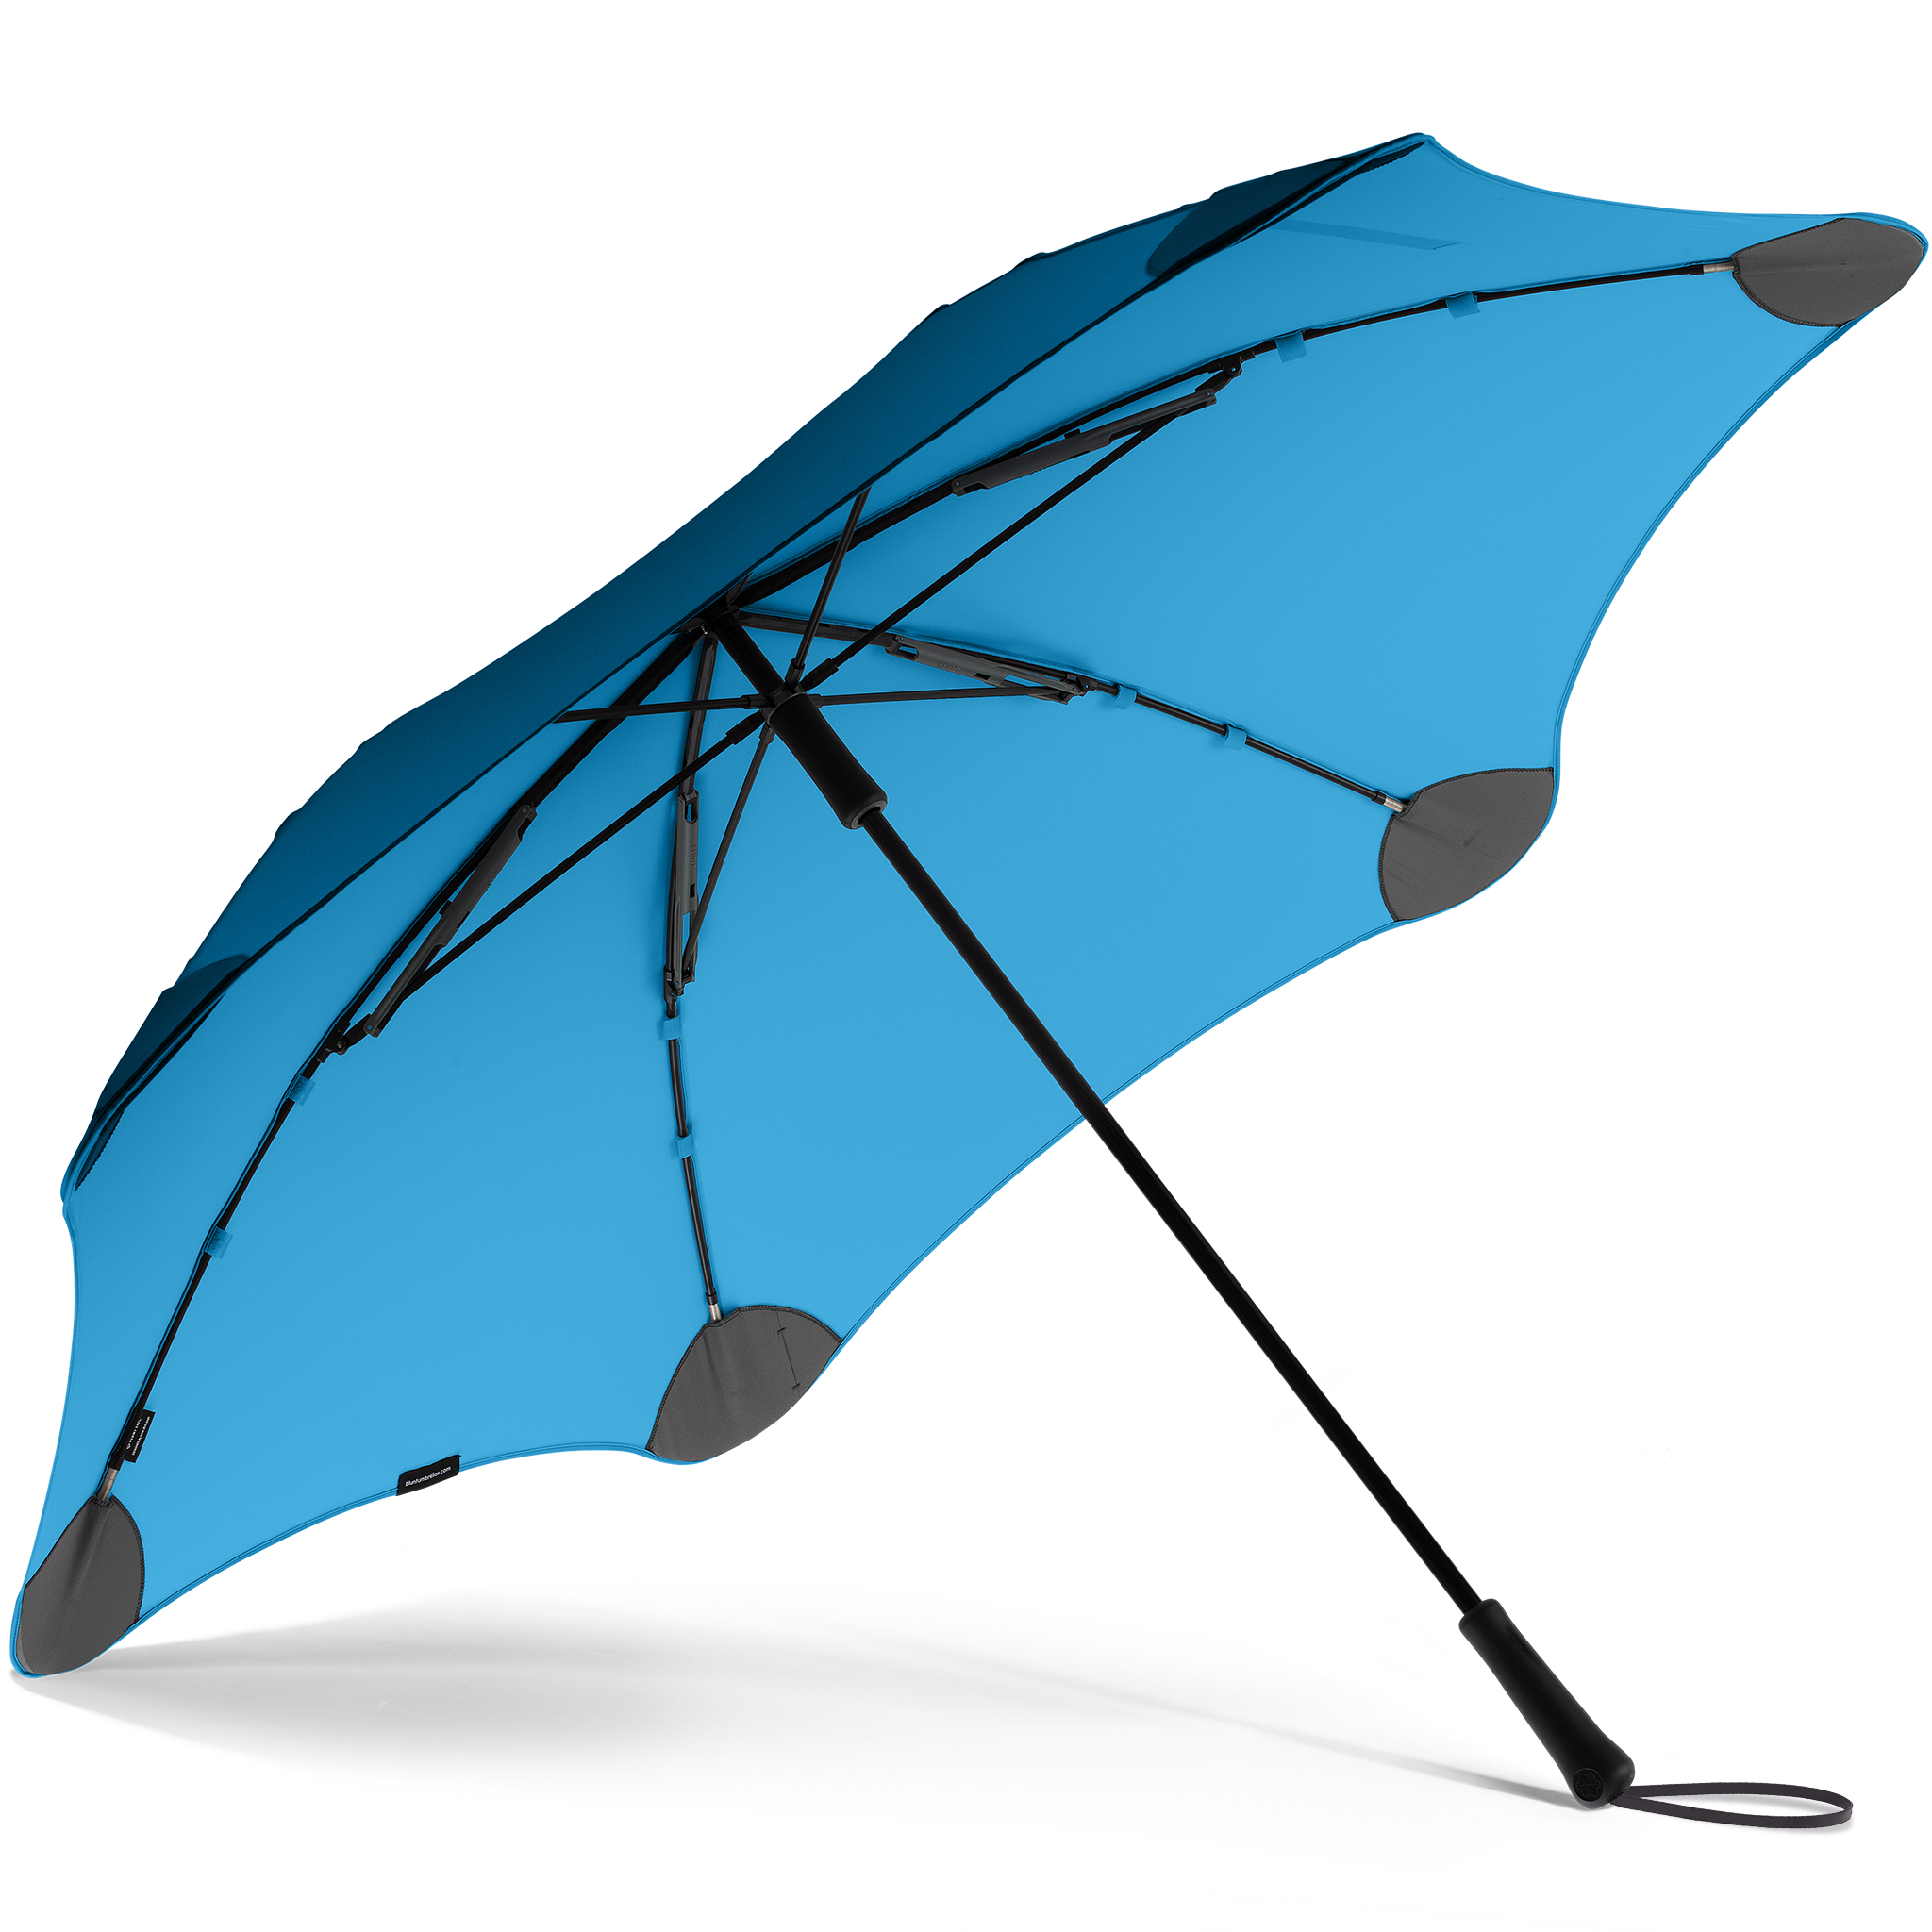 2020 Blue Exec Blunt Umbrella Under View